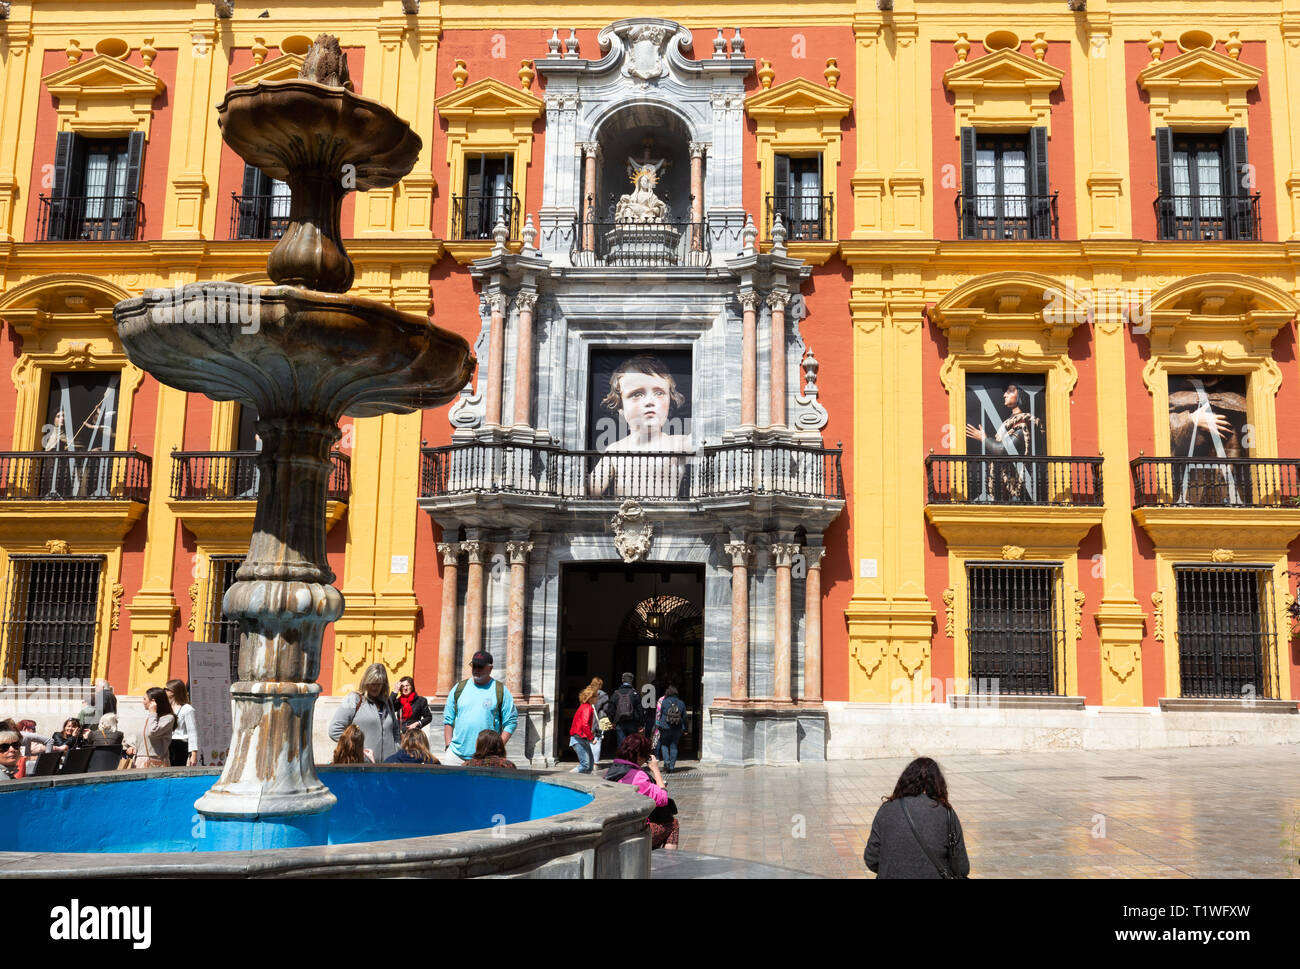 Le palais des évêques, la Plaza del Obispo, vieille ville de Malaga, malaga andalousie espagne Europe Banque D'Images